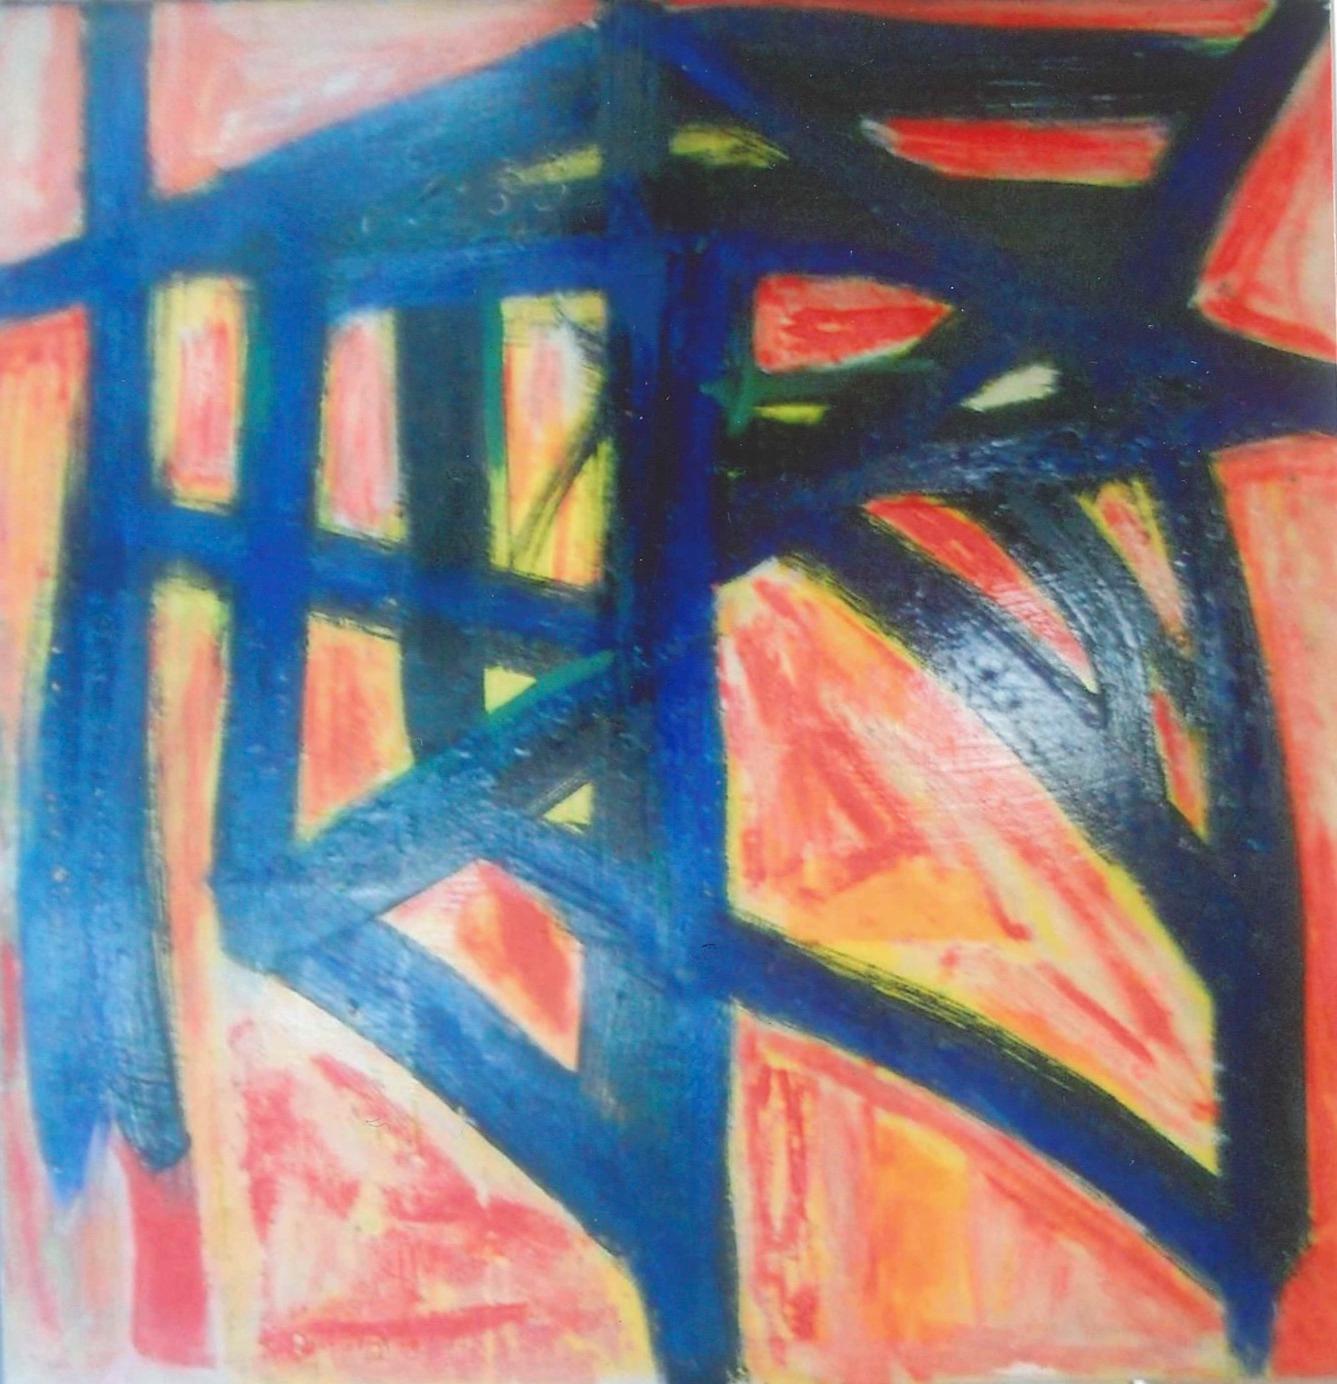 Hommage an Franz Kline ist ein Originalkunstwerk von Giorgio Lo Fermo aus dem Jahr 2010.

Öl auf Leinwand.

Dieses zeitgenössische Kunstwerk stellt eine farbige abstrakte Komposition dar: Der scheinbar spontane und intensive Pinselstrich ist in